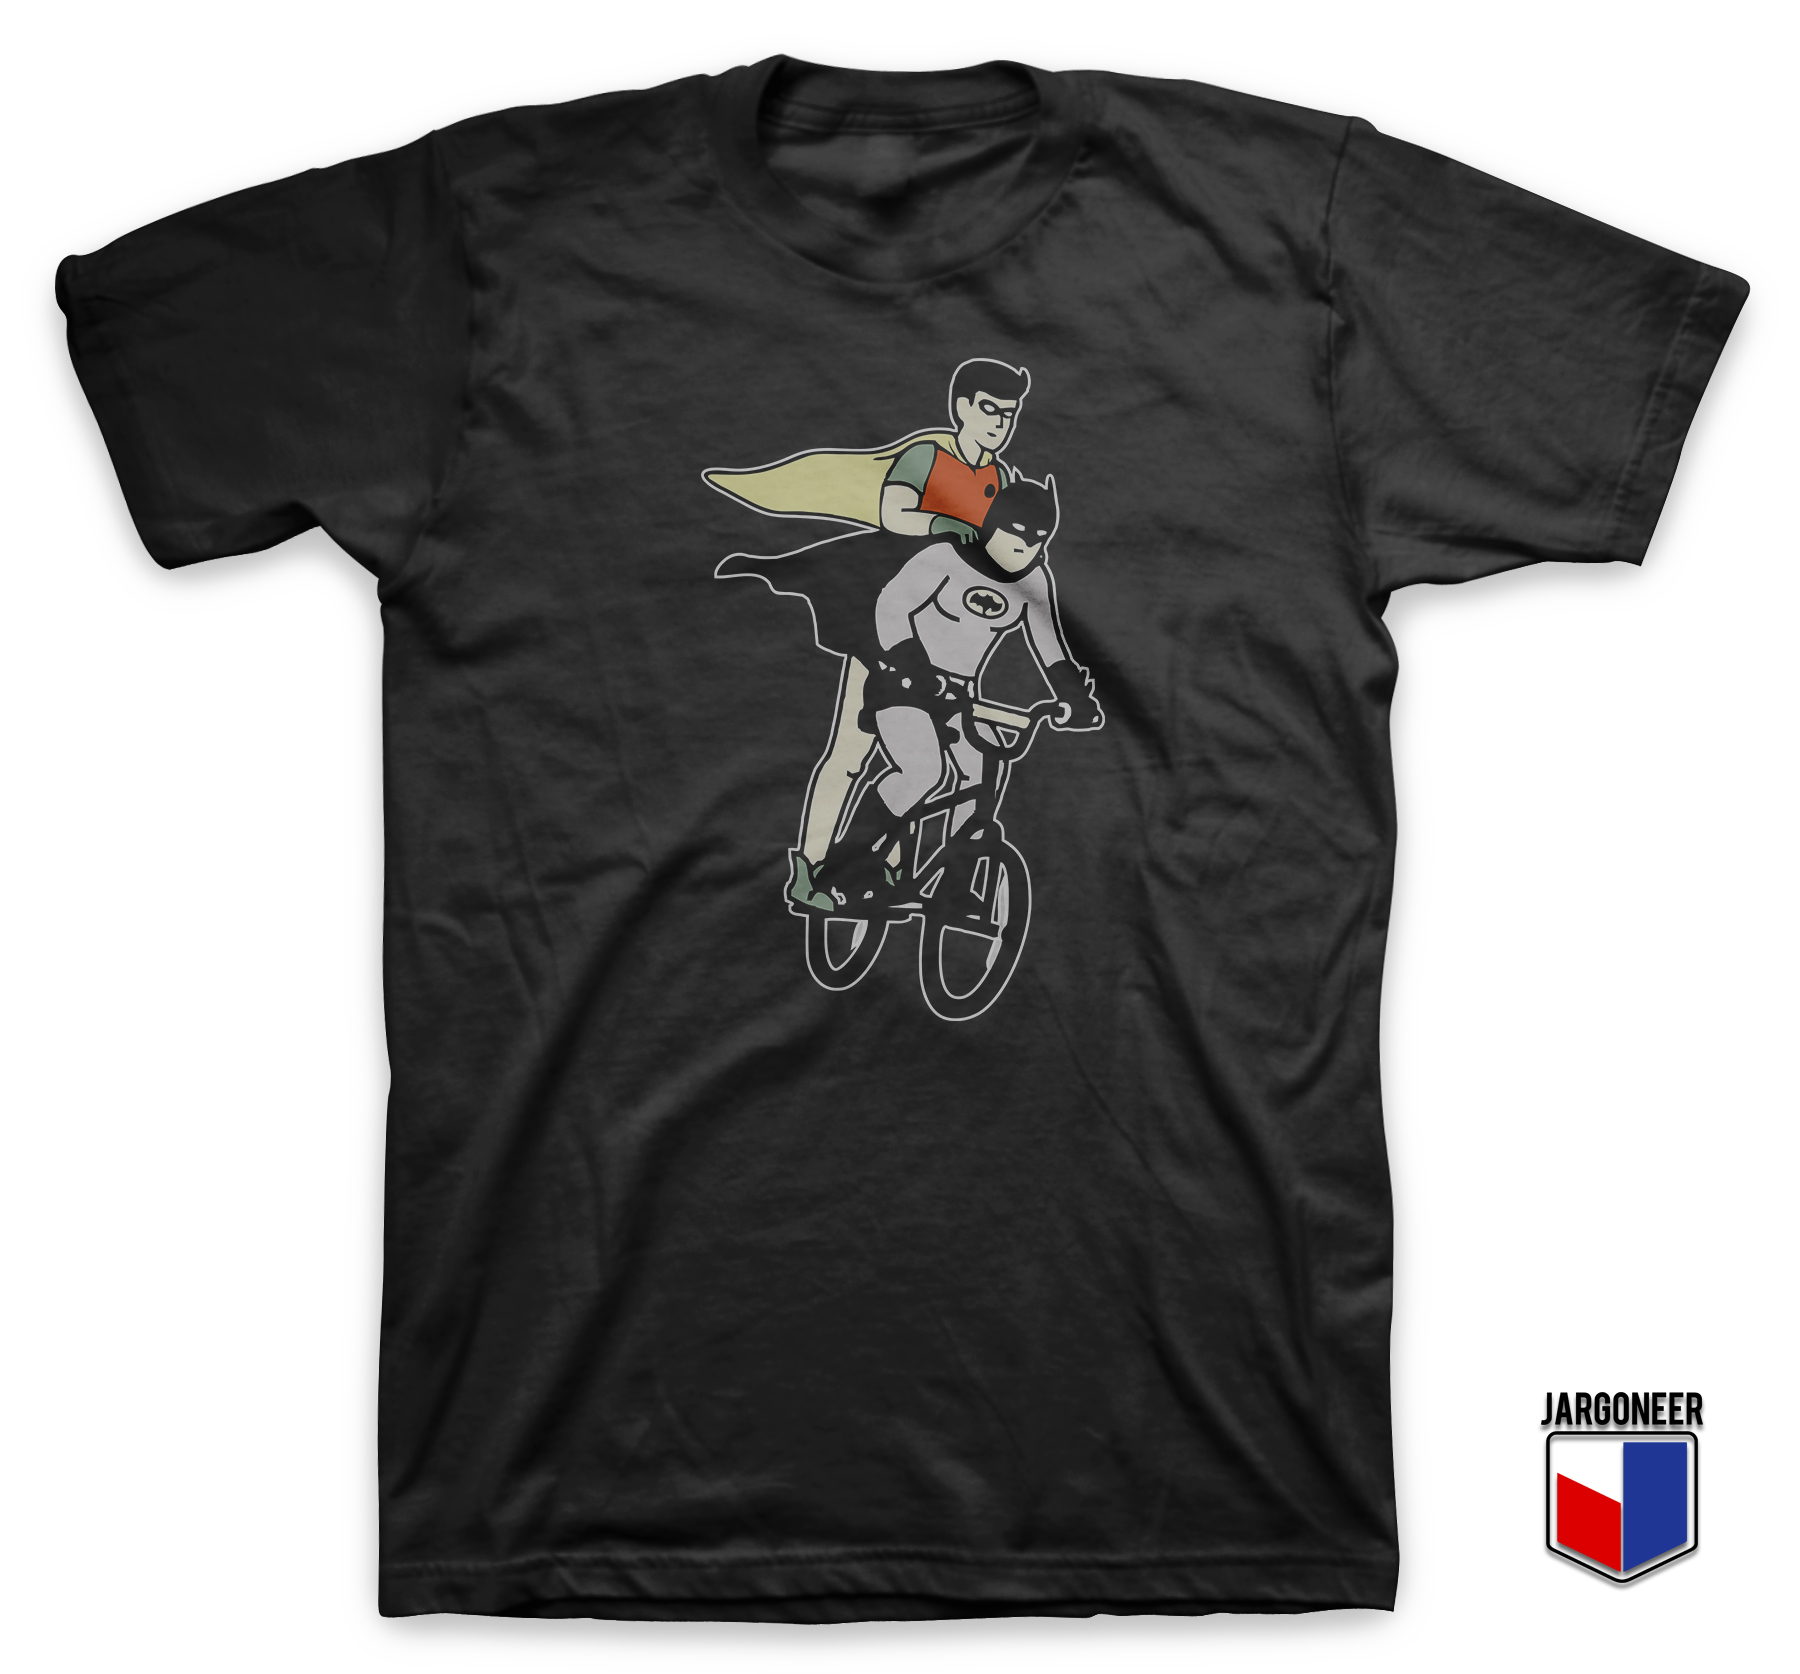 The Dynamic Cyclist Black - Shop Unique Graphic Cool Shirt Designs